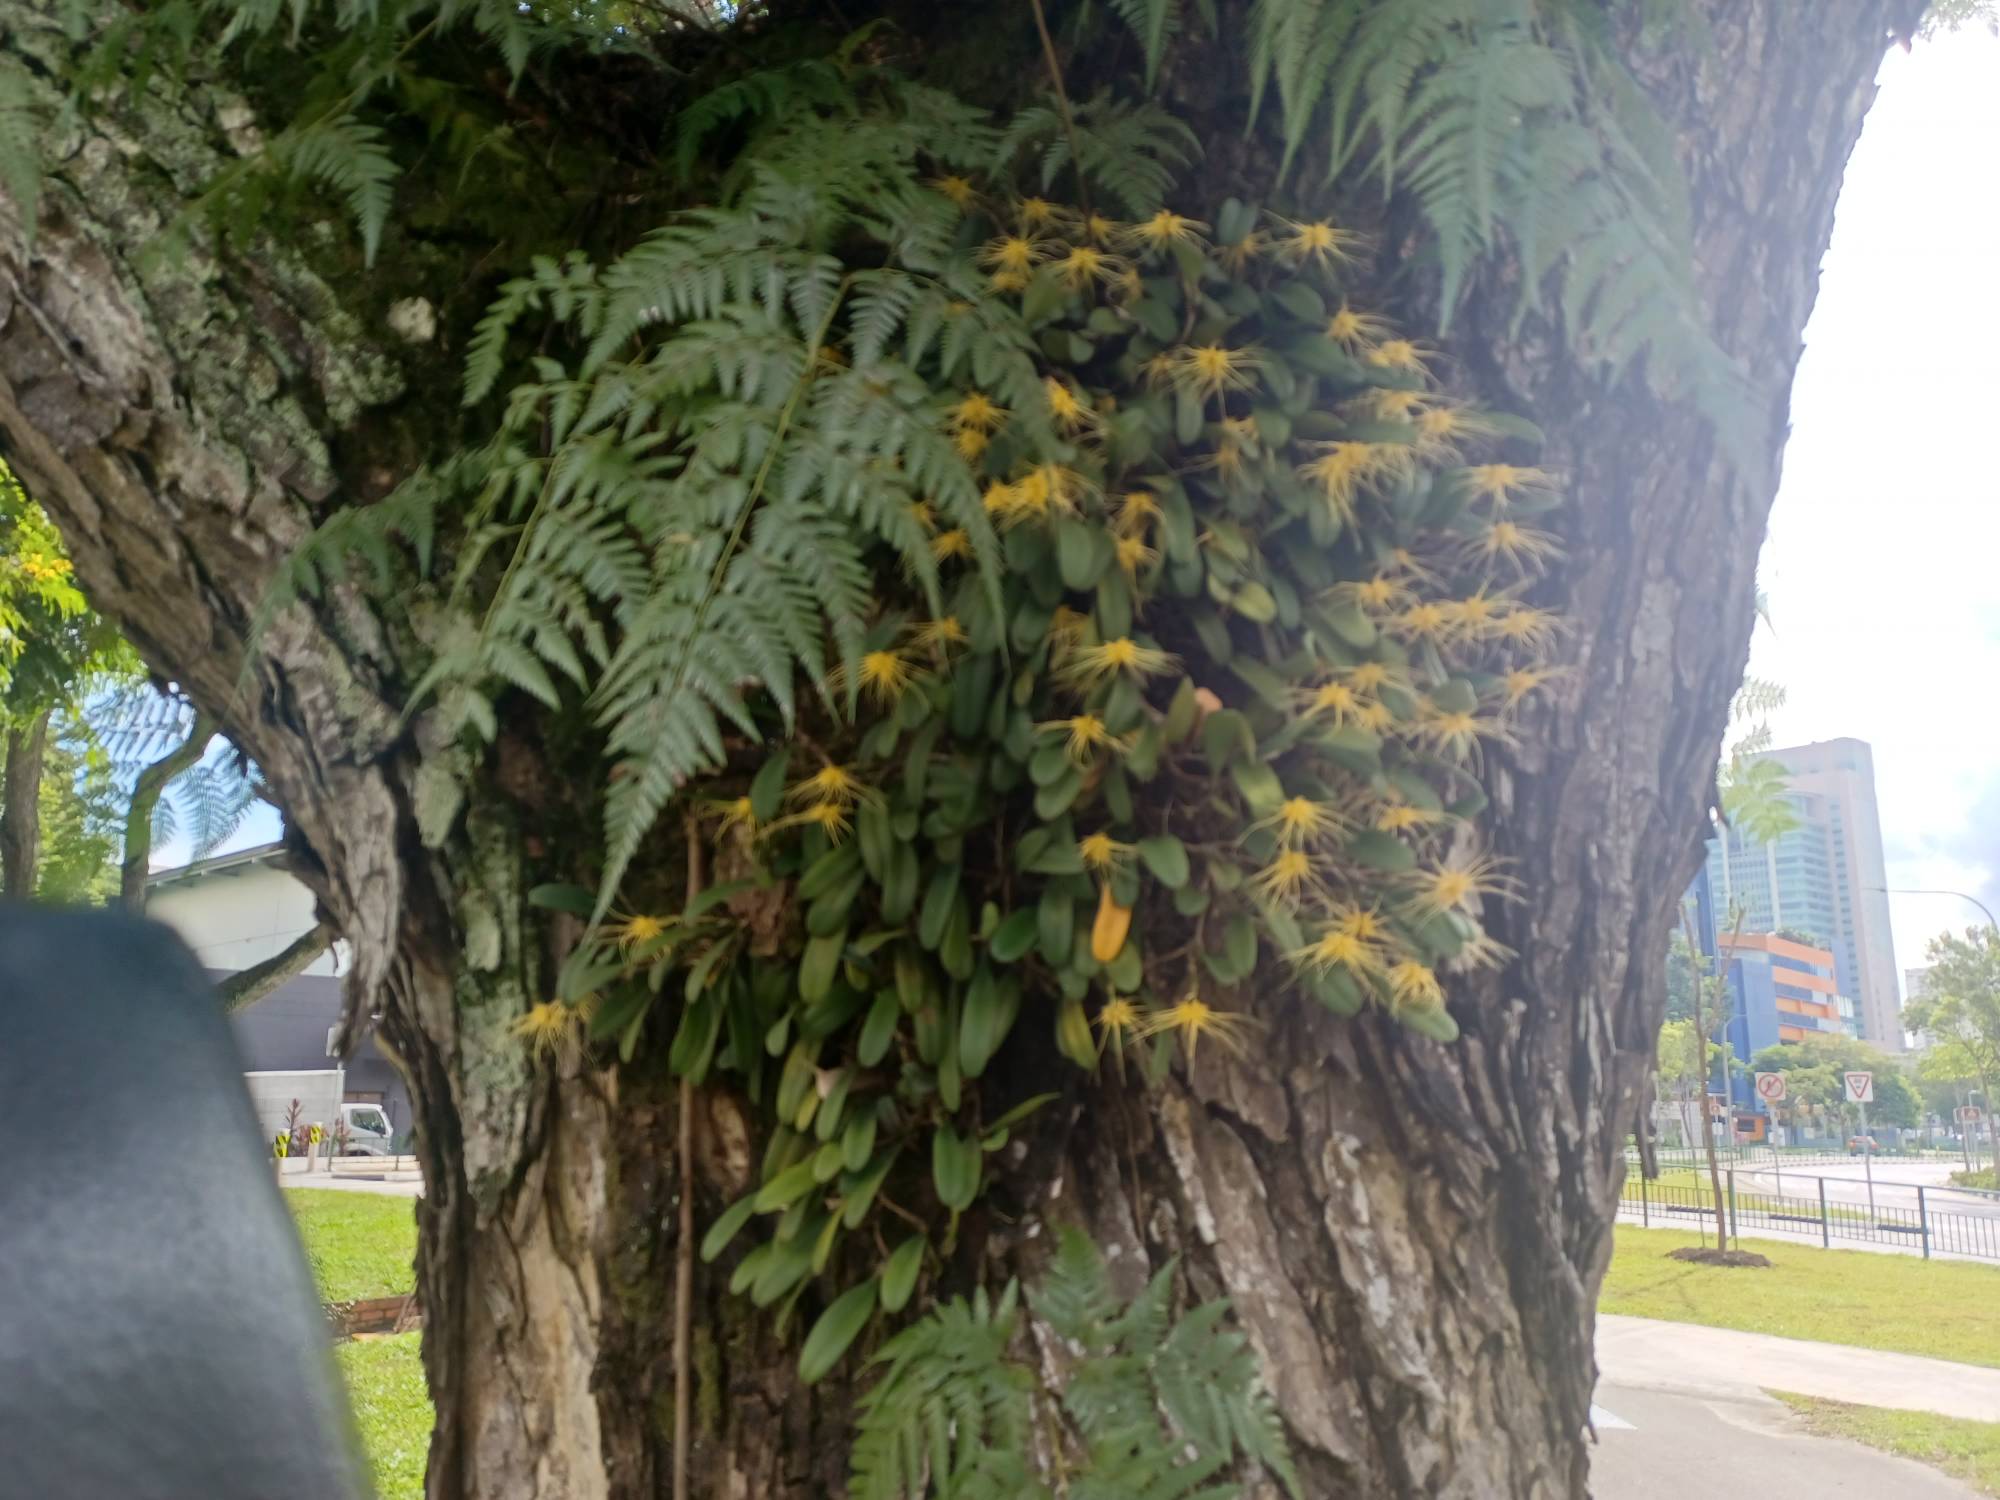 Bulbophyllum vaginatum 